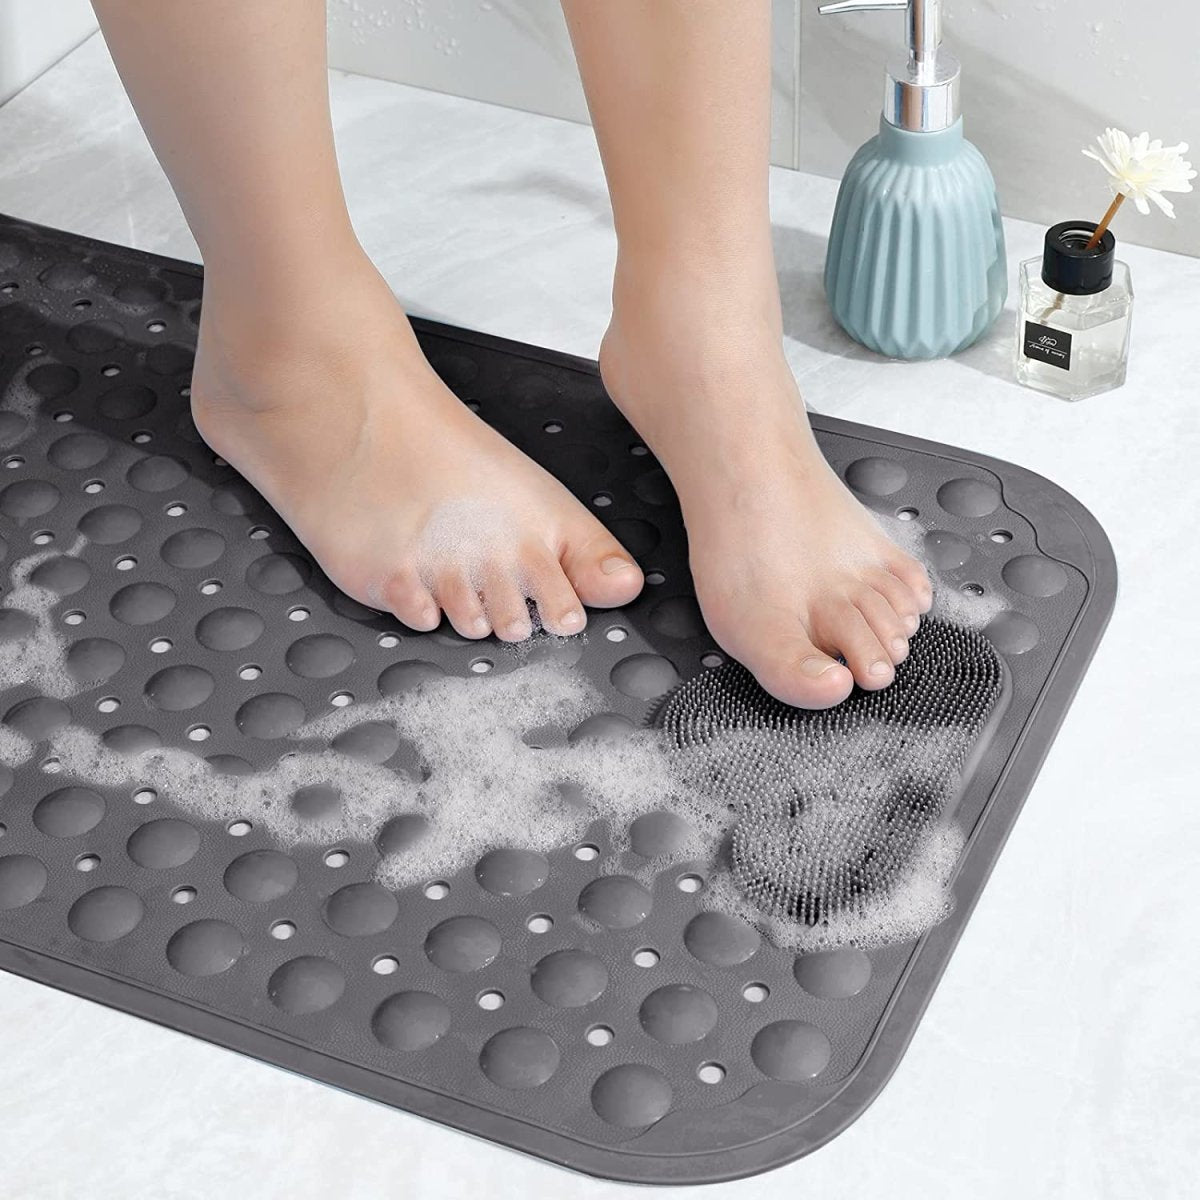 Square Shower Mats Non-slip Anti Mold Bath Mats Machine Washable